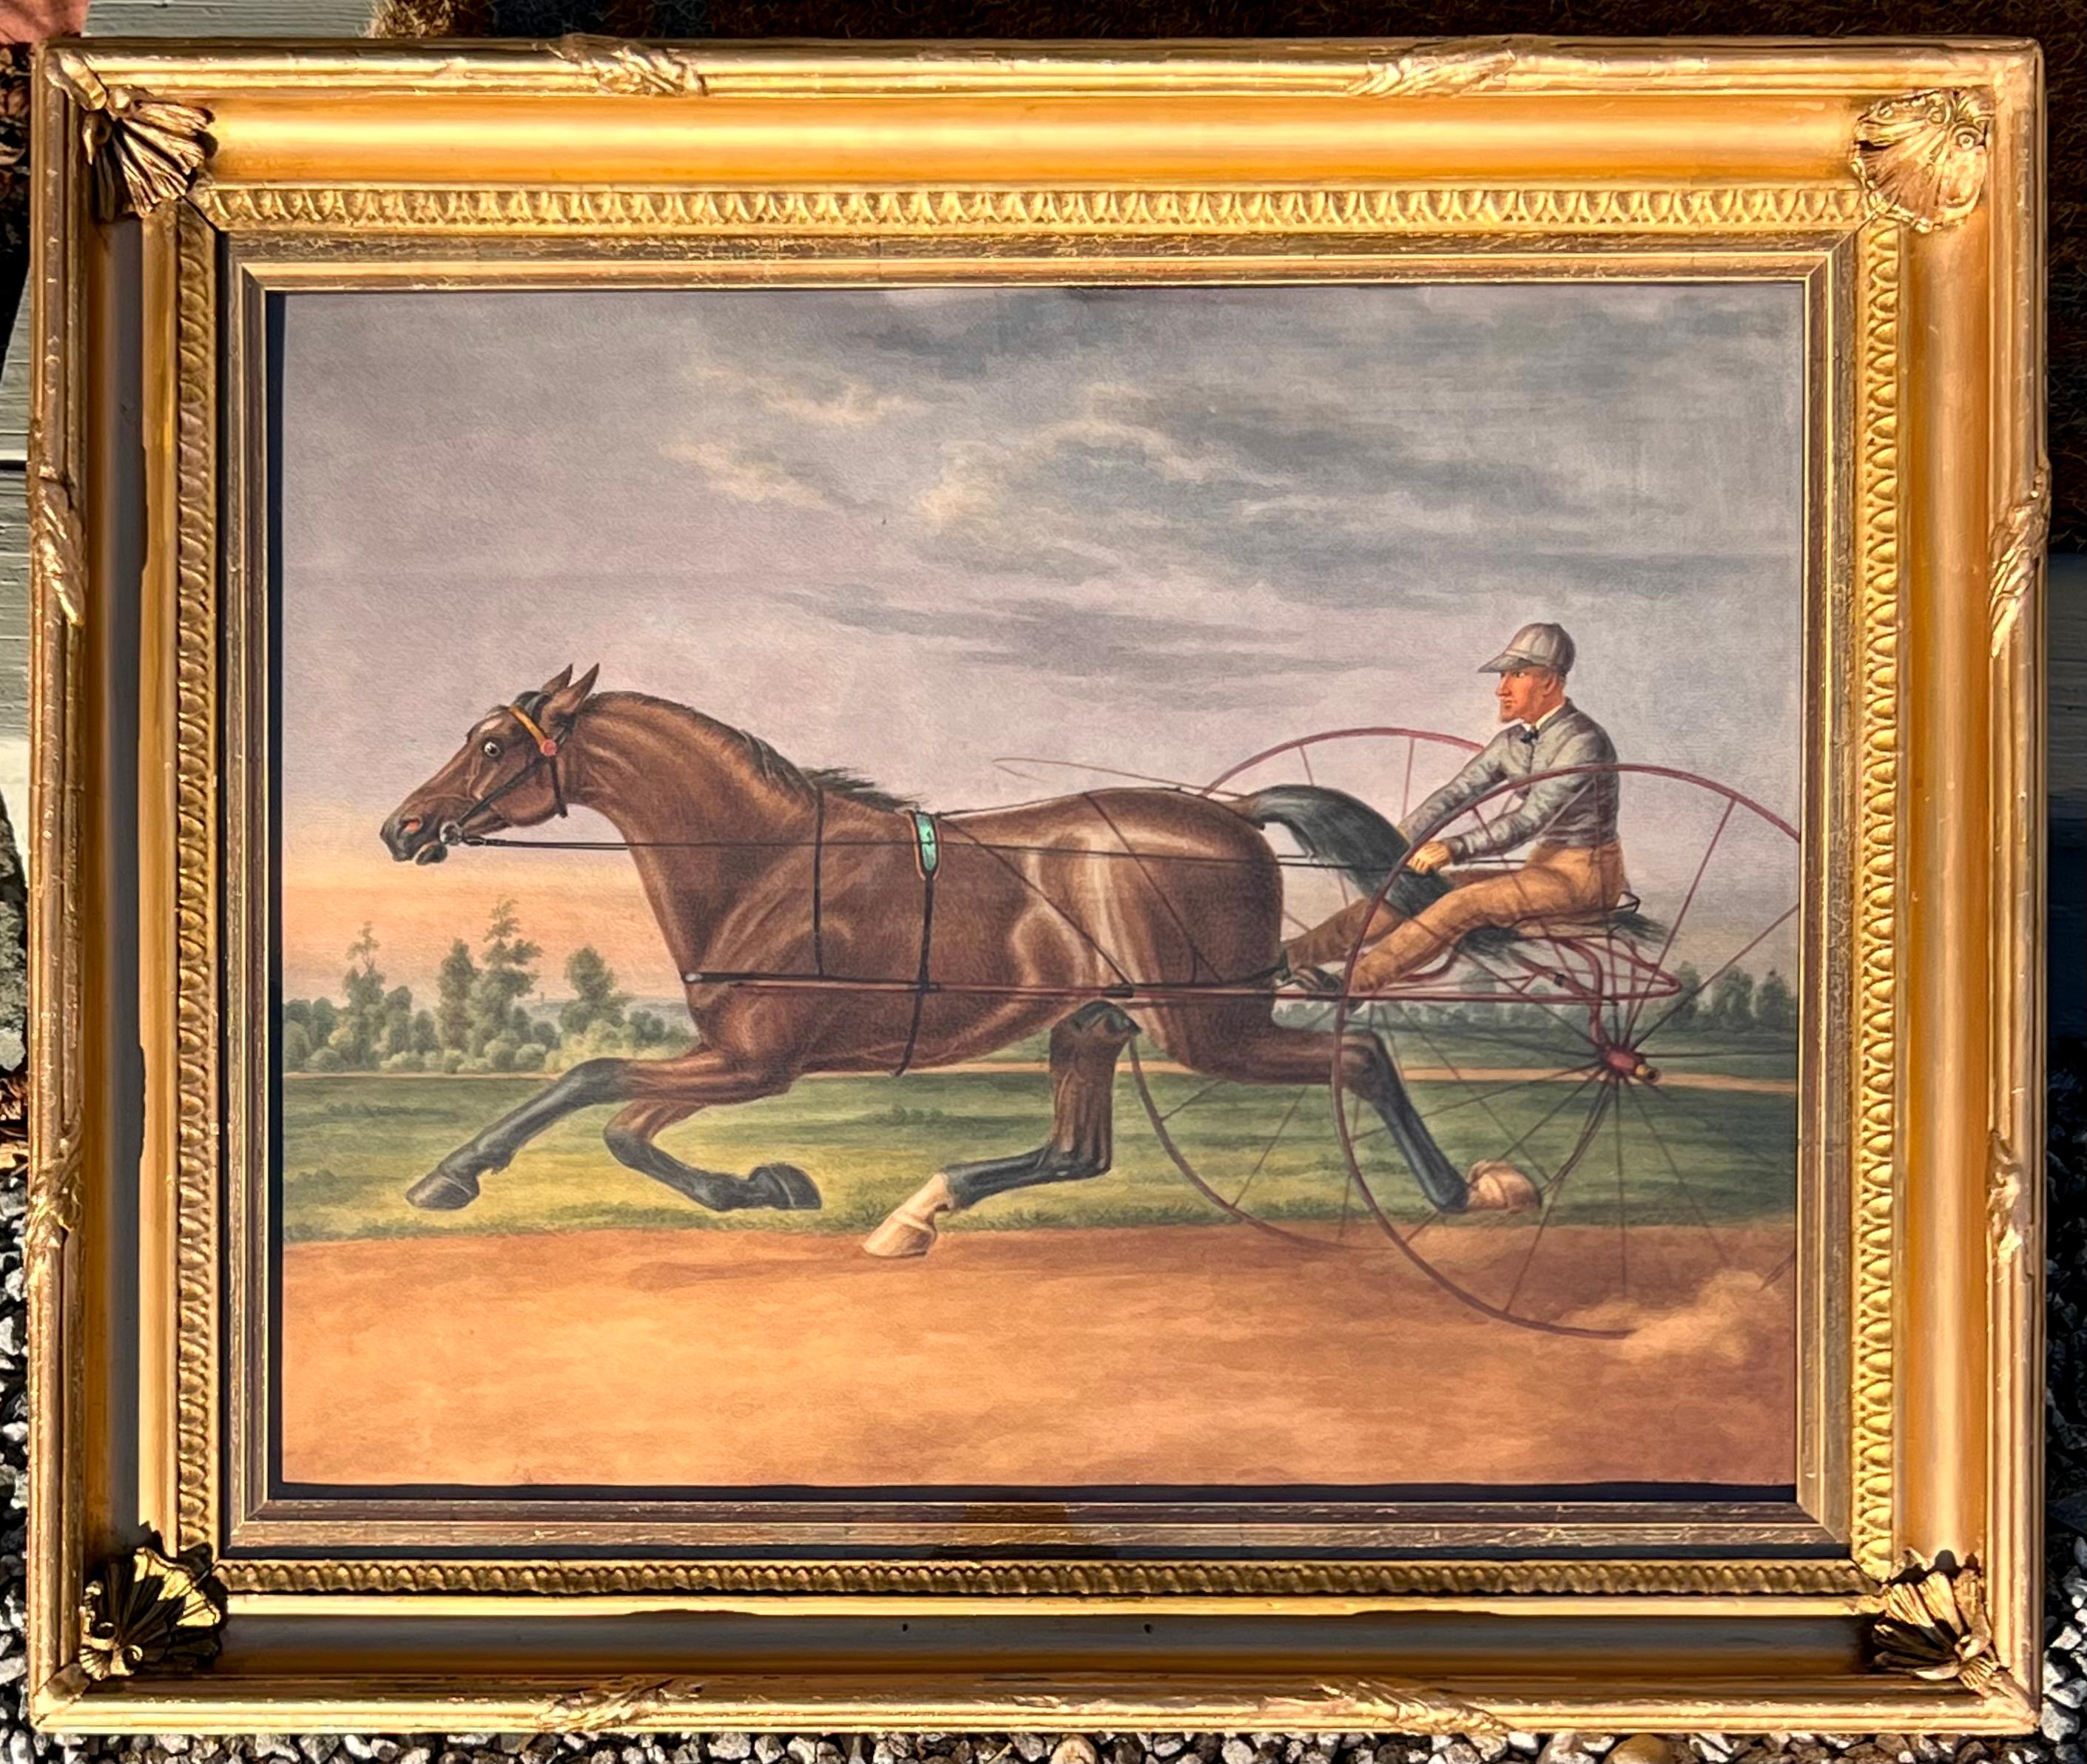 Harness Racer at Belmont Park 1884, Philadelphia - Painting by Agustus Kollner